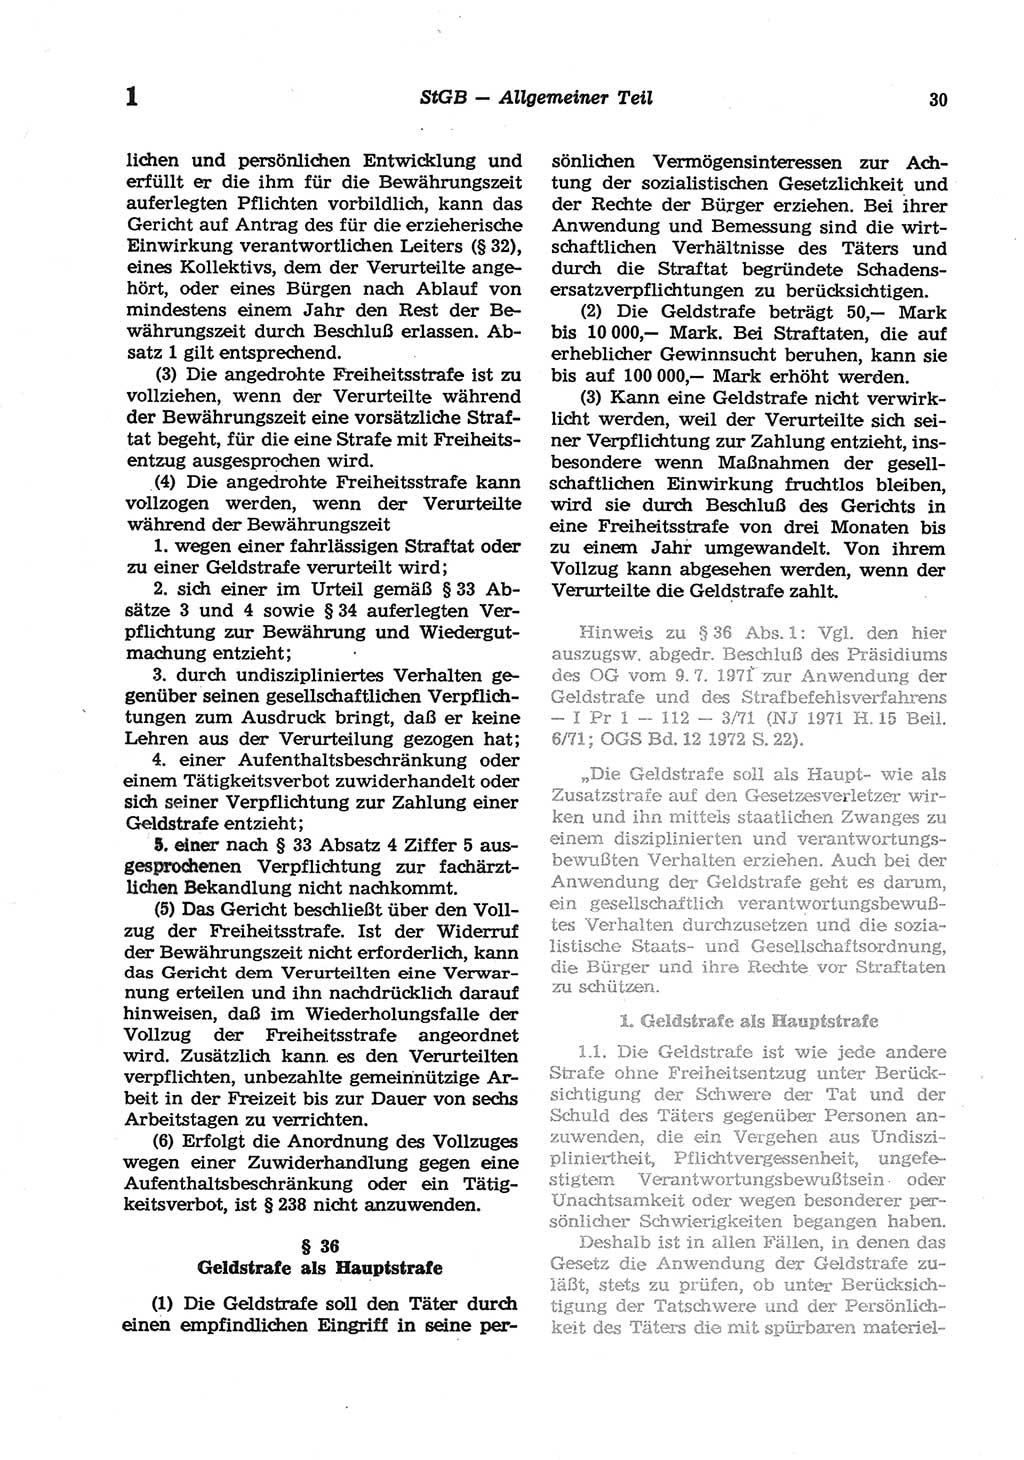 Strafgesetzbuch (StGB) der Deutschen Demokratischen Republik (DDR) und angrenzende Gesetze und Bestimmungen 1977, Seite 30 (StGB DDR Ges. Best. 1977, S. 30)